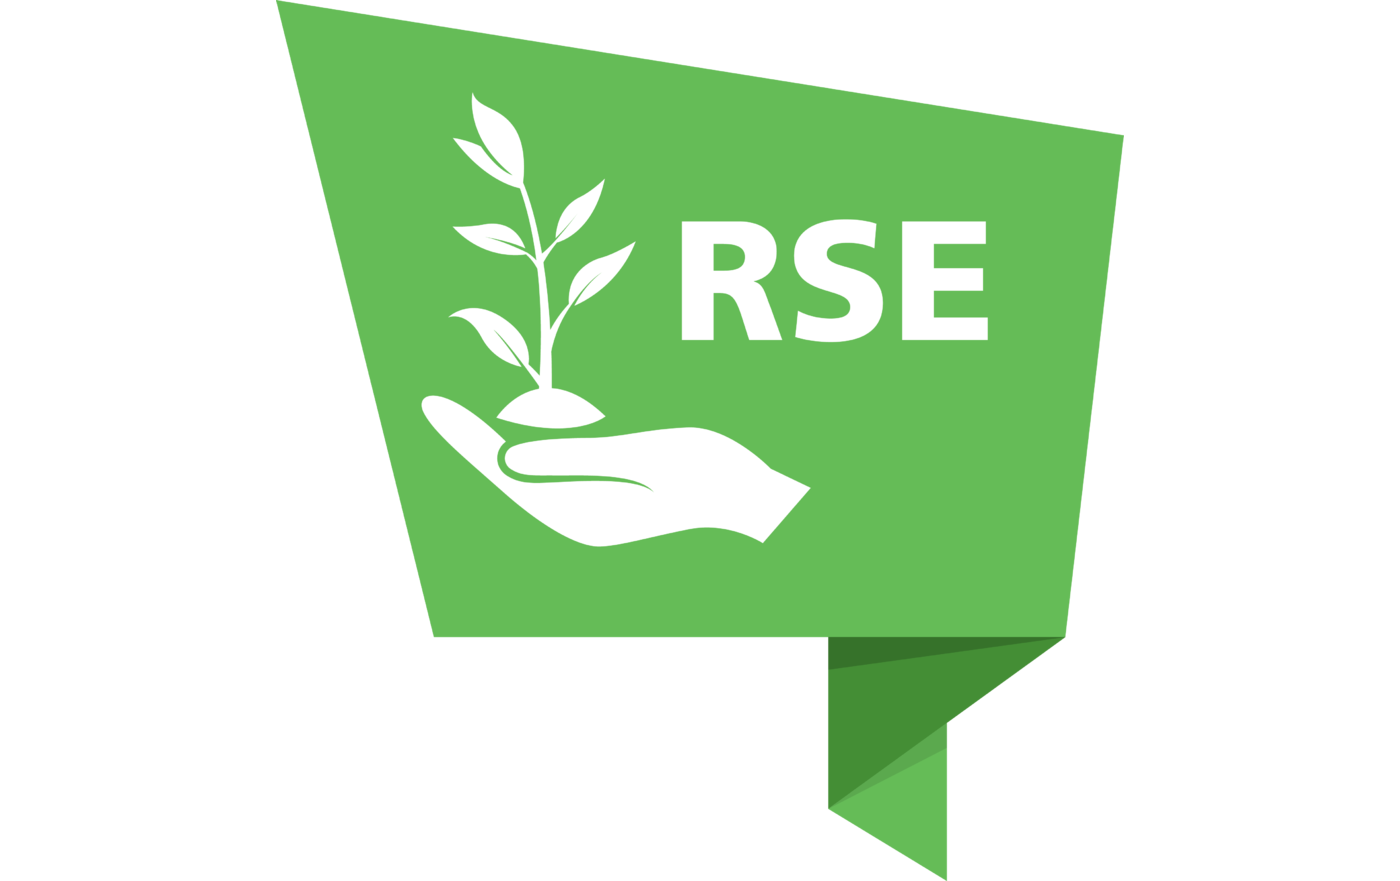 RSE / QSE - Ensemble, prenons soin de l'avenir !